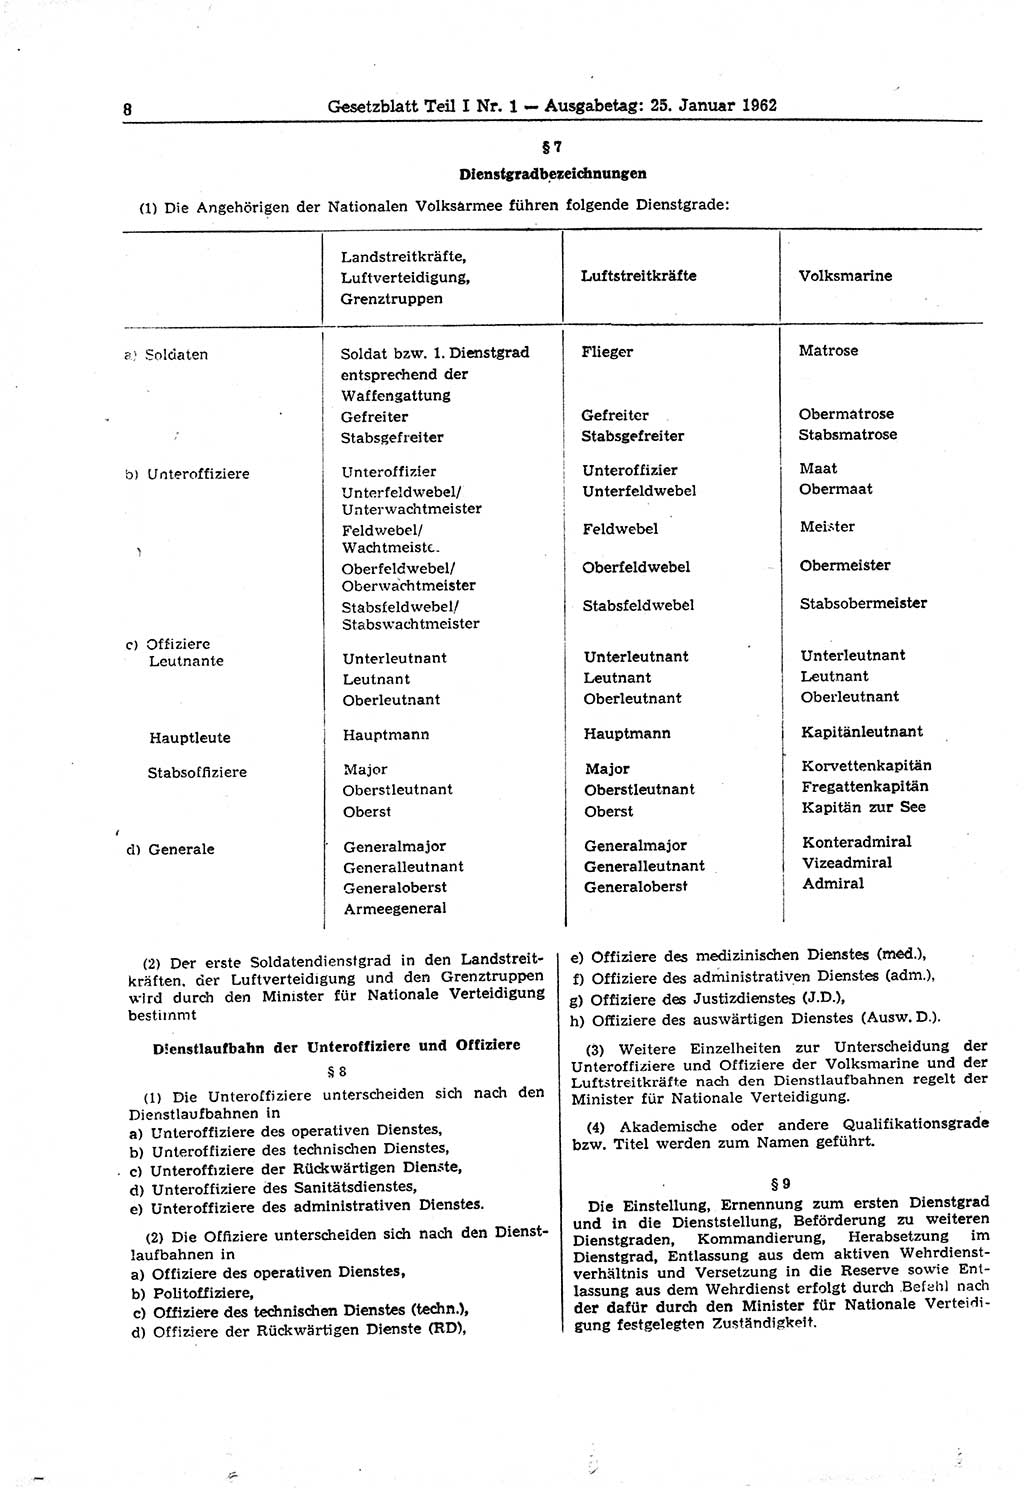 Gesetzblatt (GBl.) der Deutschen Demokratischen Republik (DDR) Teil Ⅰ 1962, Seite 8 (GBl. DDR Ⅰ 1962, S. 8)